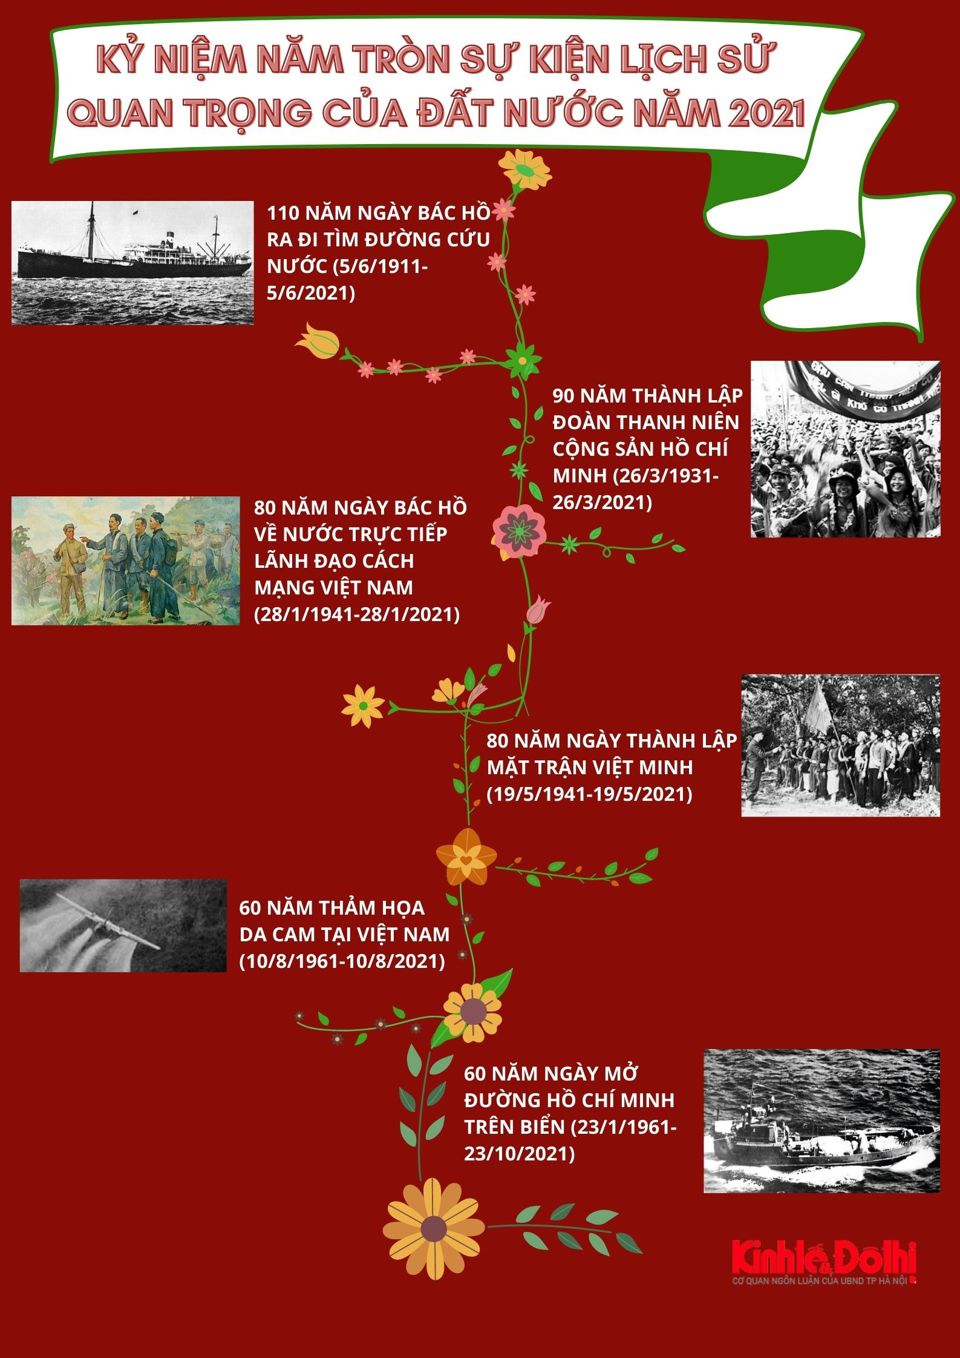 [Infographic] Kỷ niệm các sự kiện quan trọng, ngày lễ lớn của Việt Nam trong năm 2021 - Ảnh 3